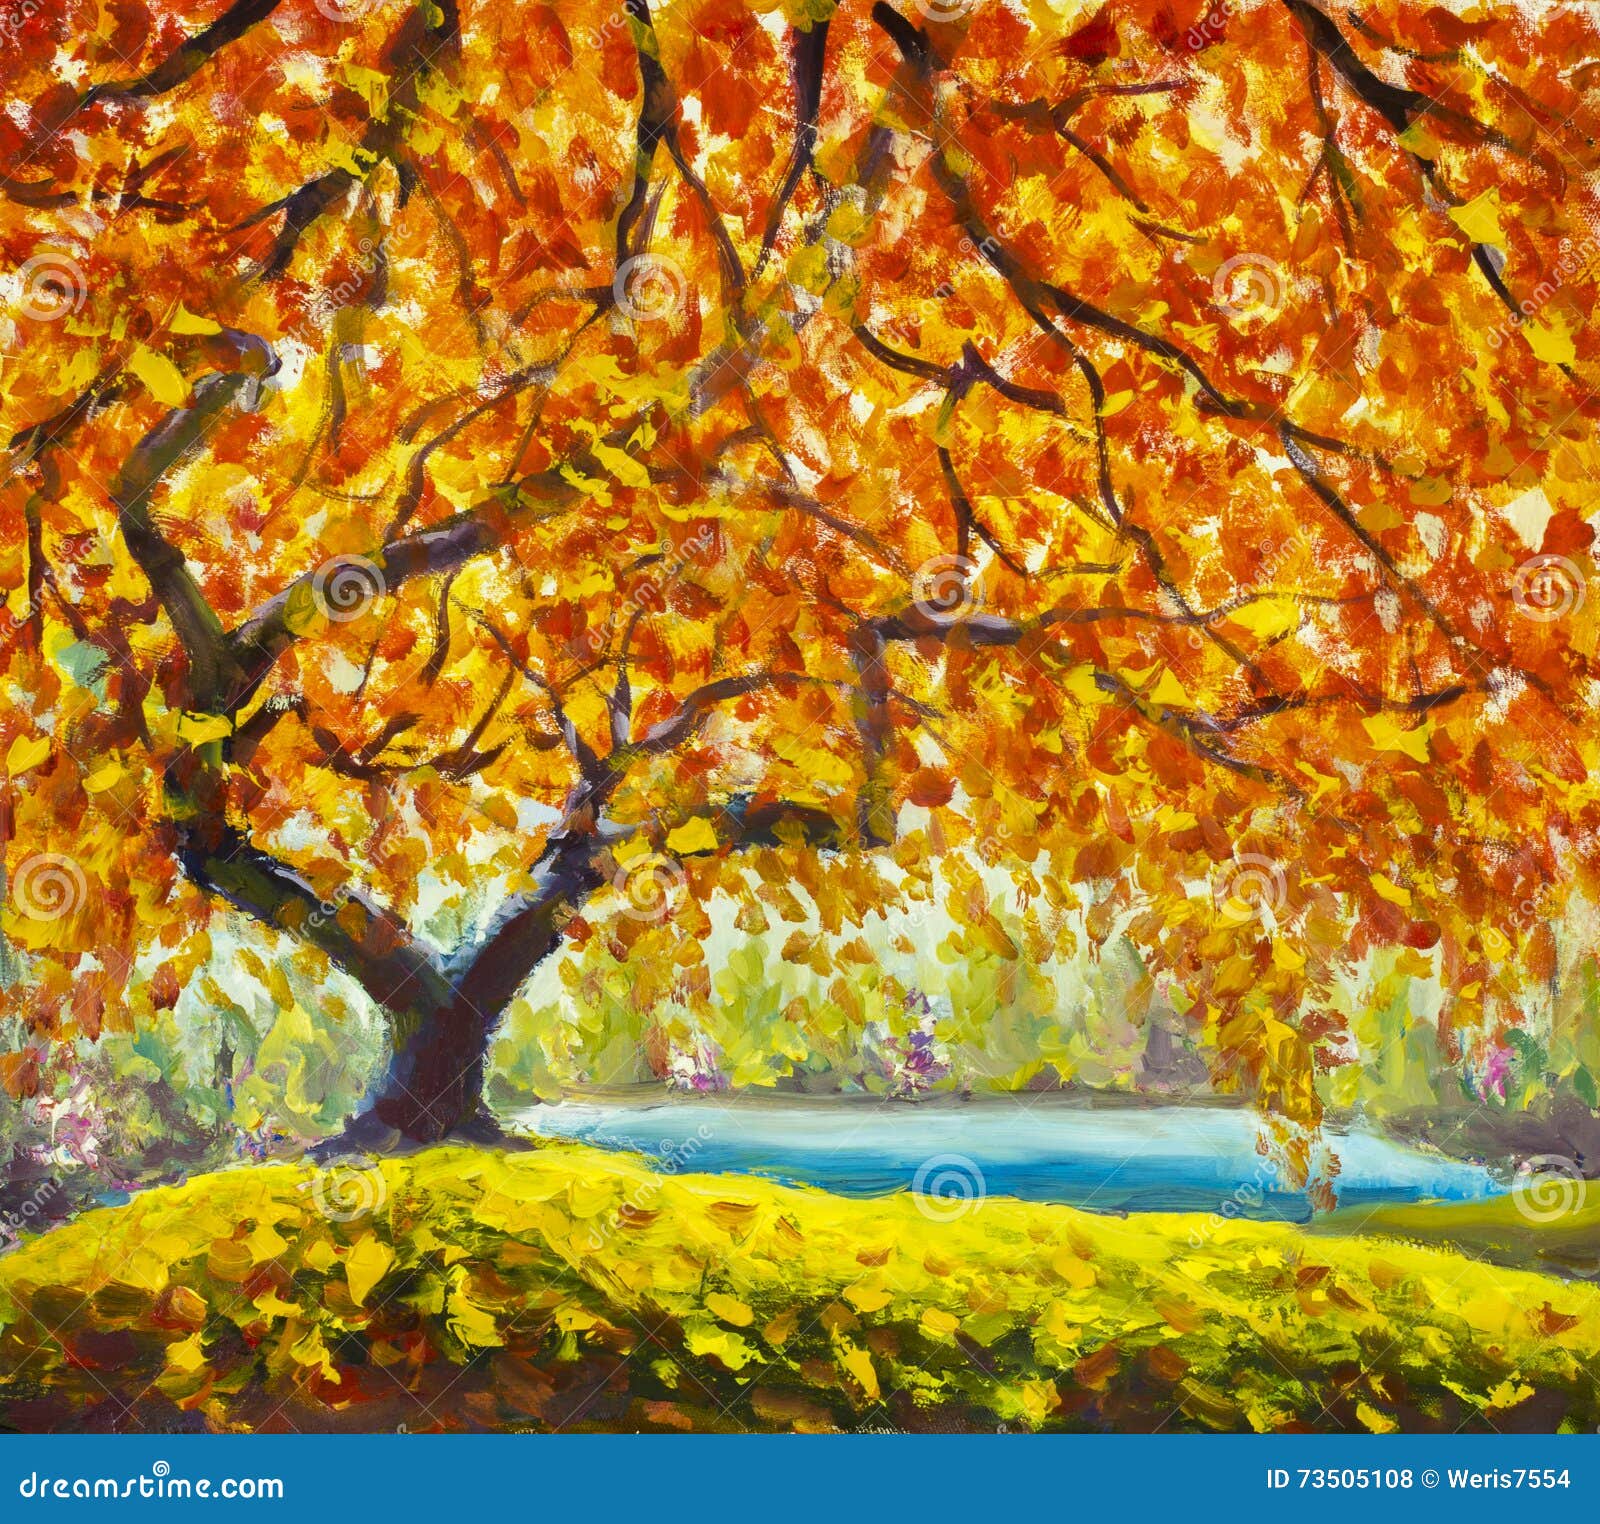 árboles en otoño cuadros de paisajes